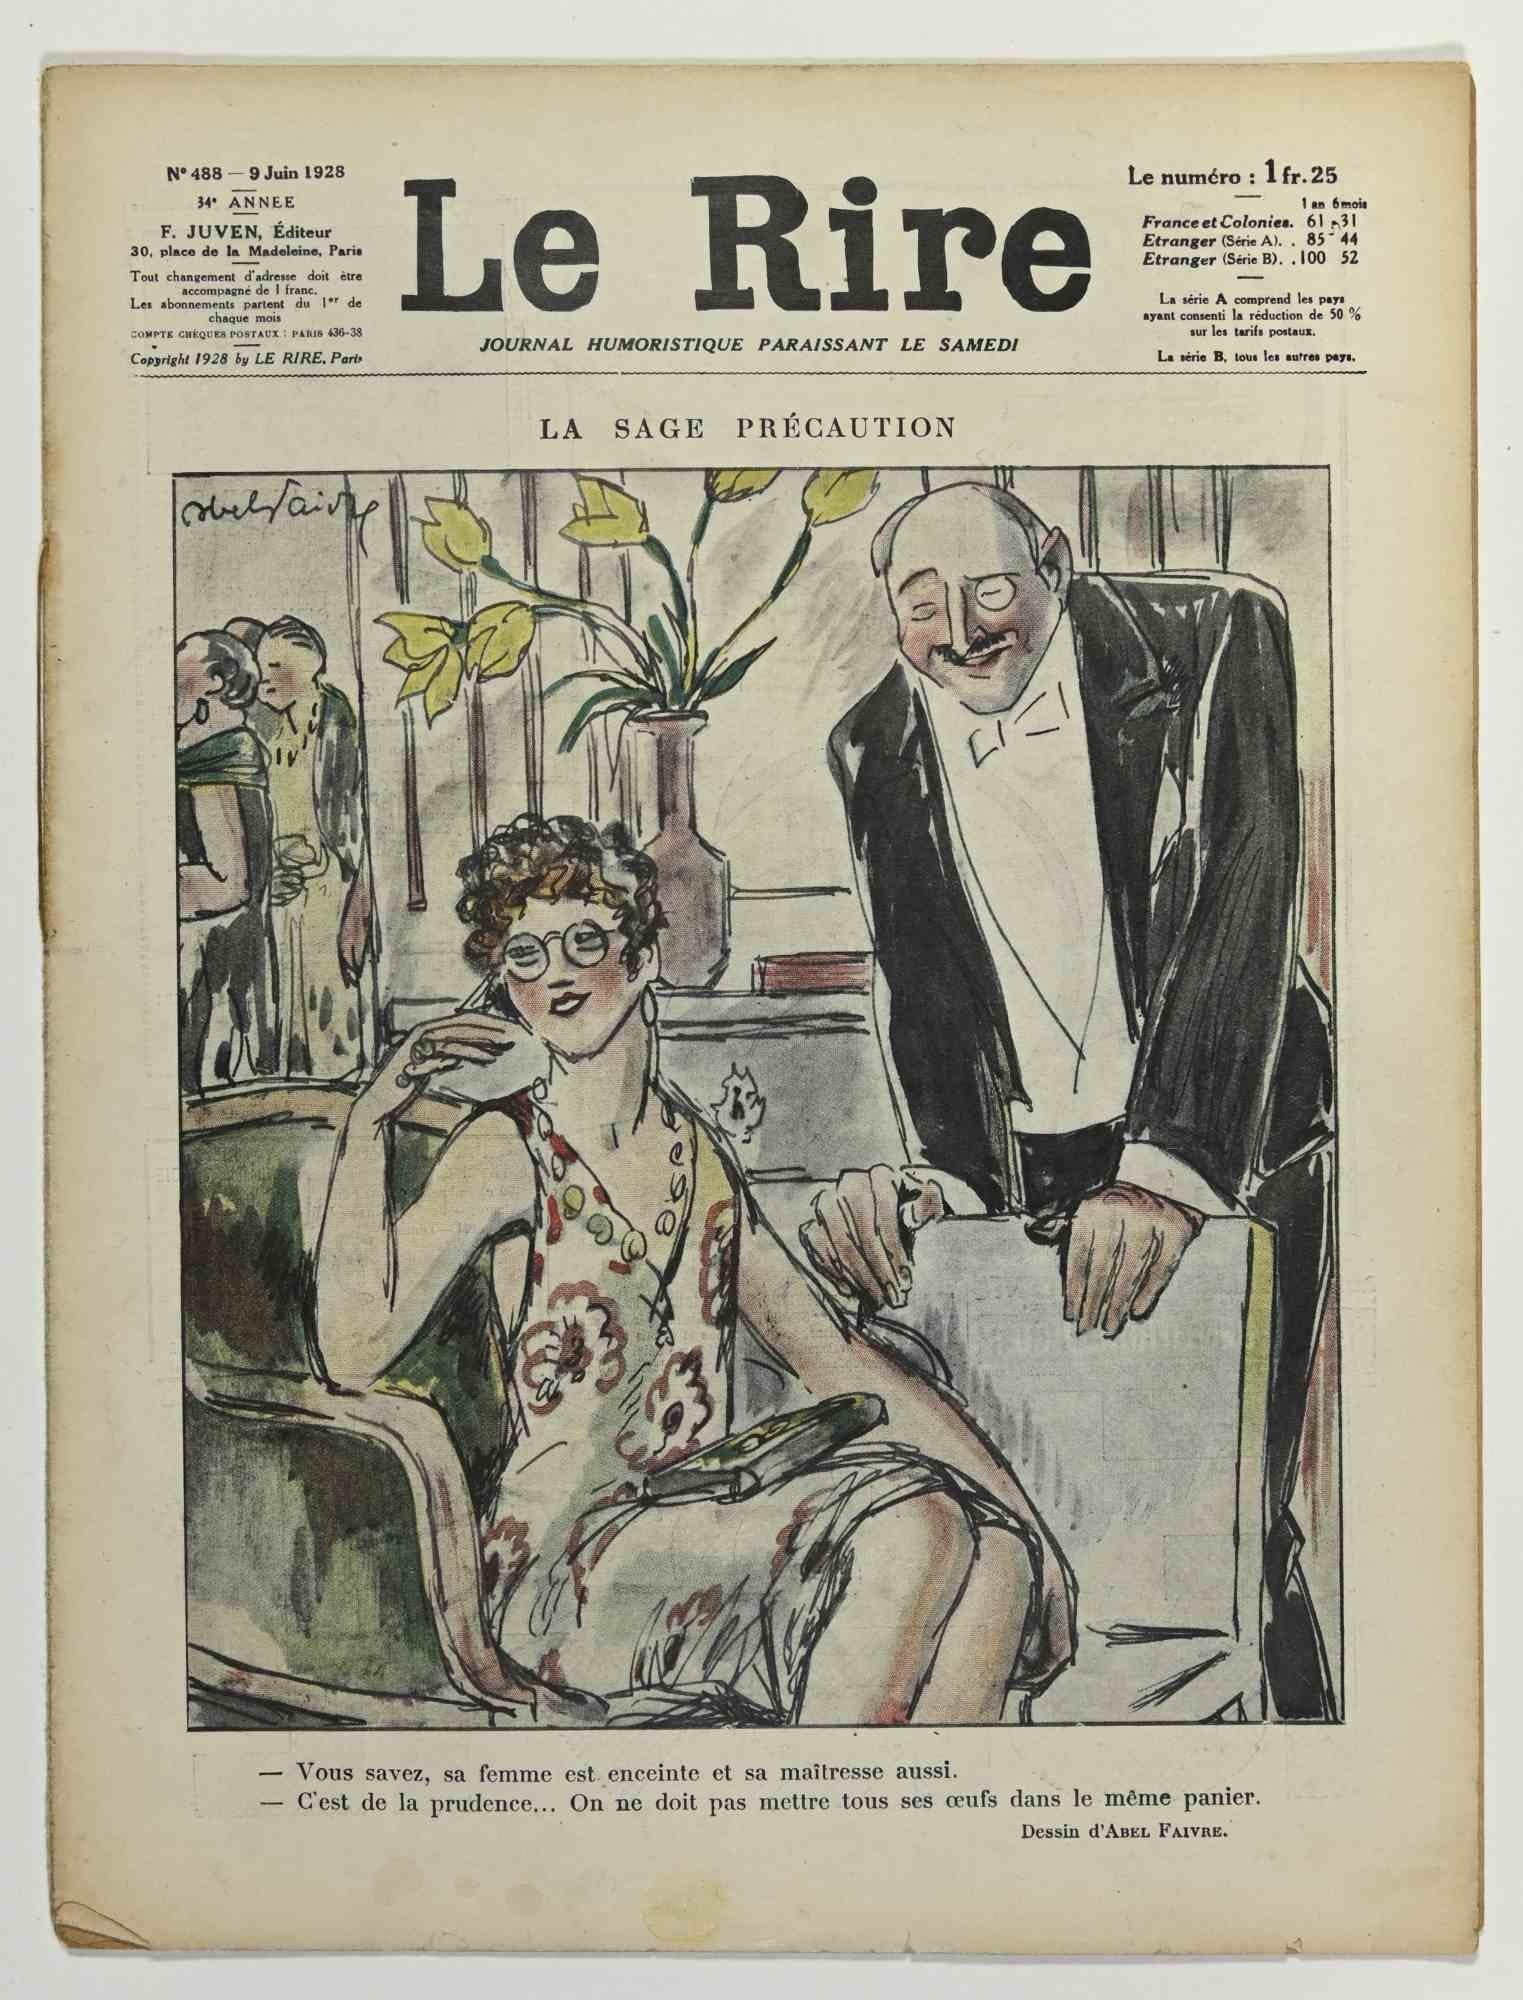 Le Rire - Magazine illustré par Abel Faivre - 1928 - Art de Jules-Abel Faivre